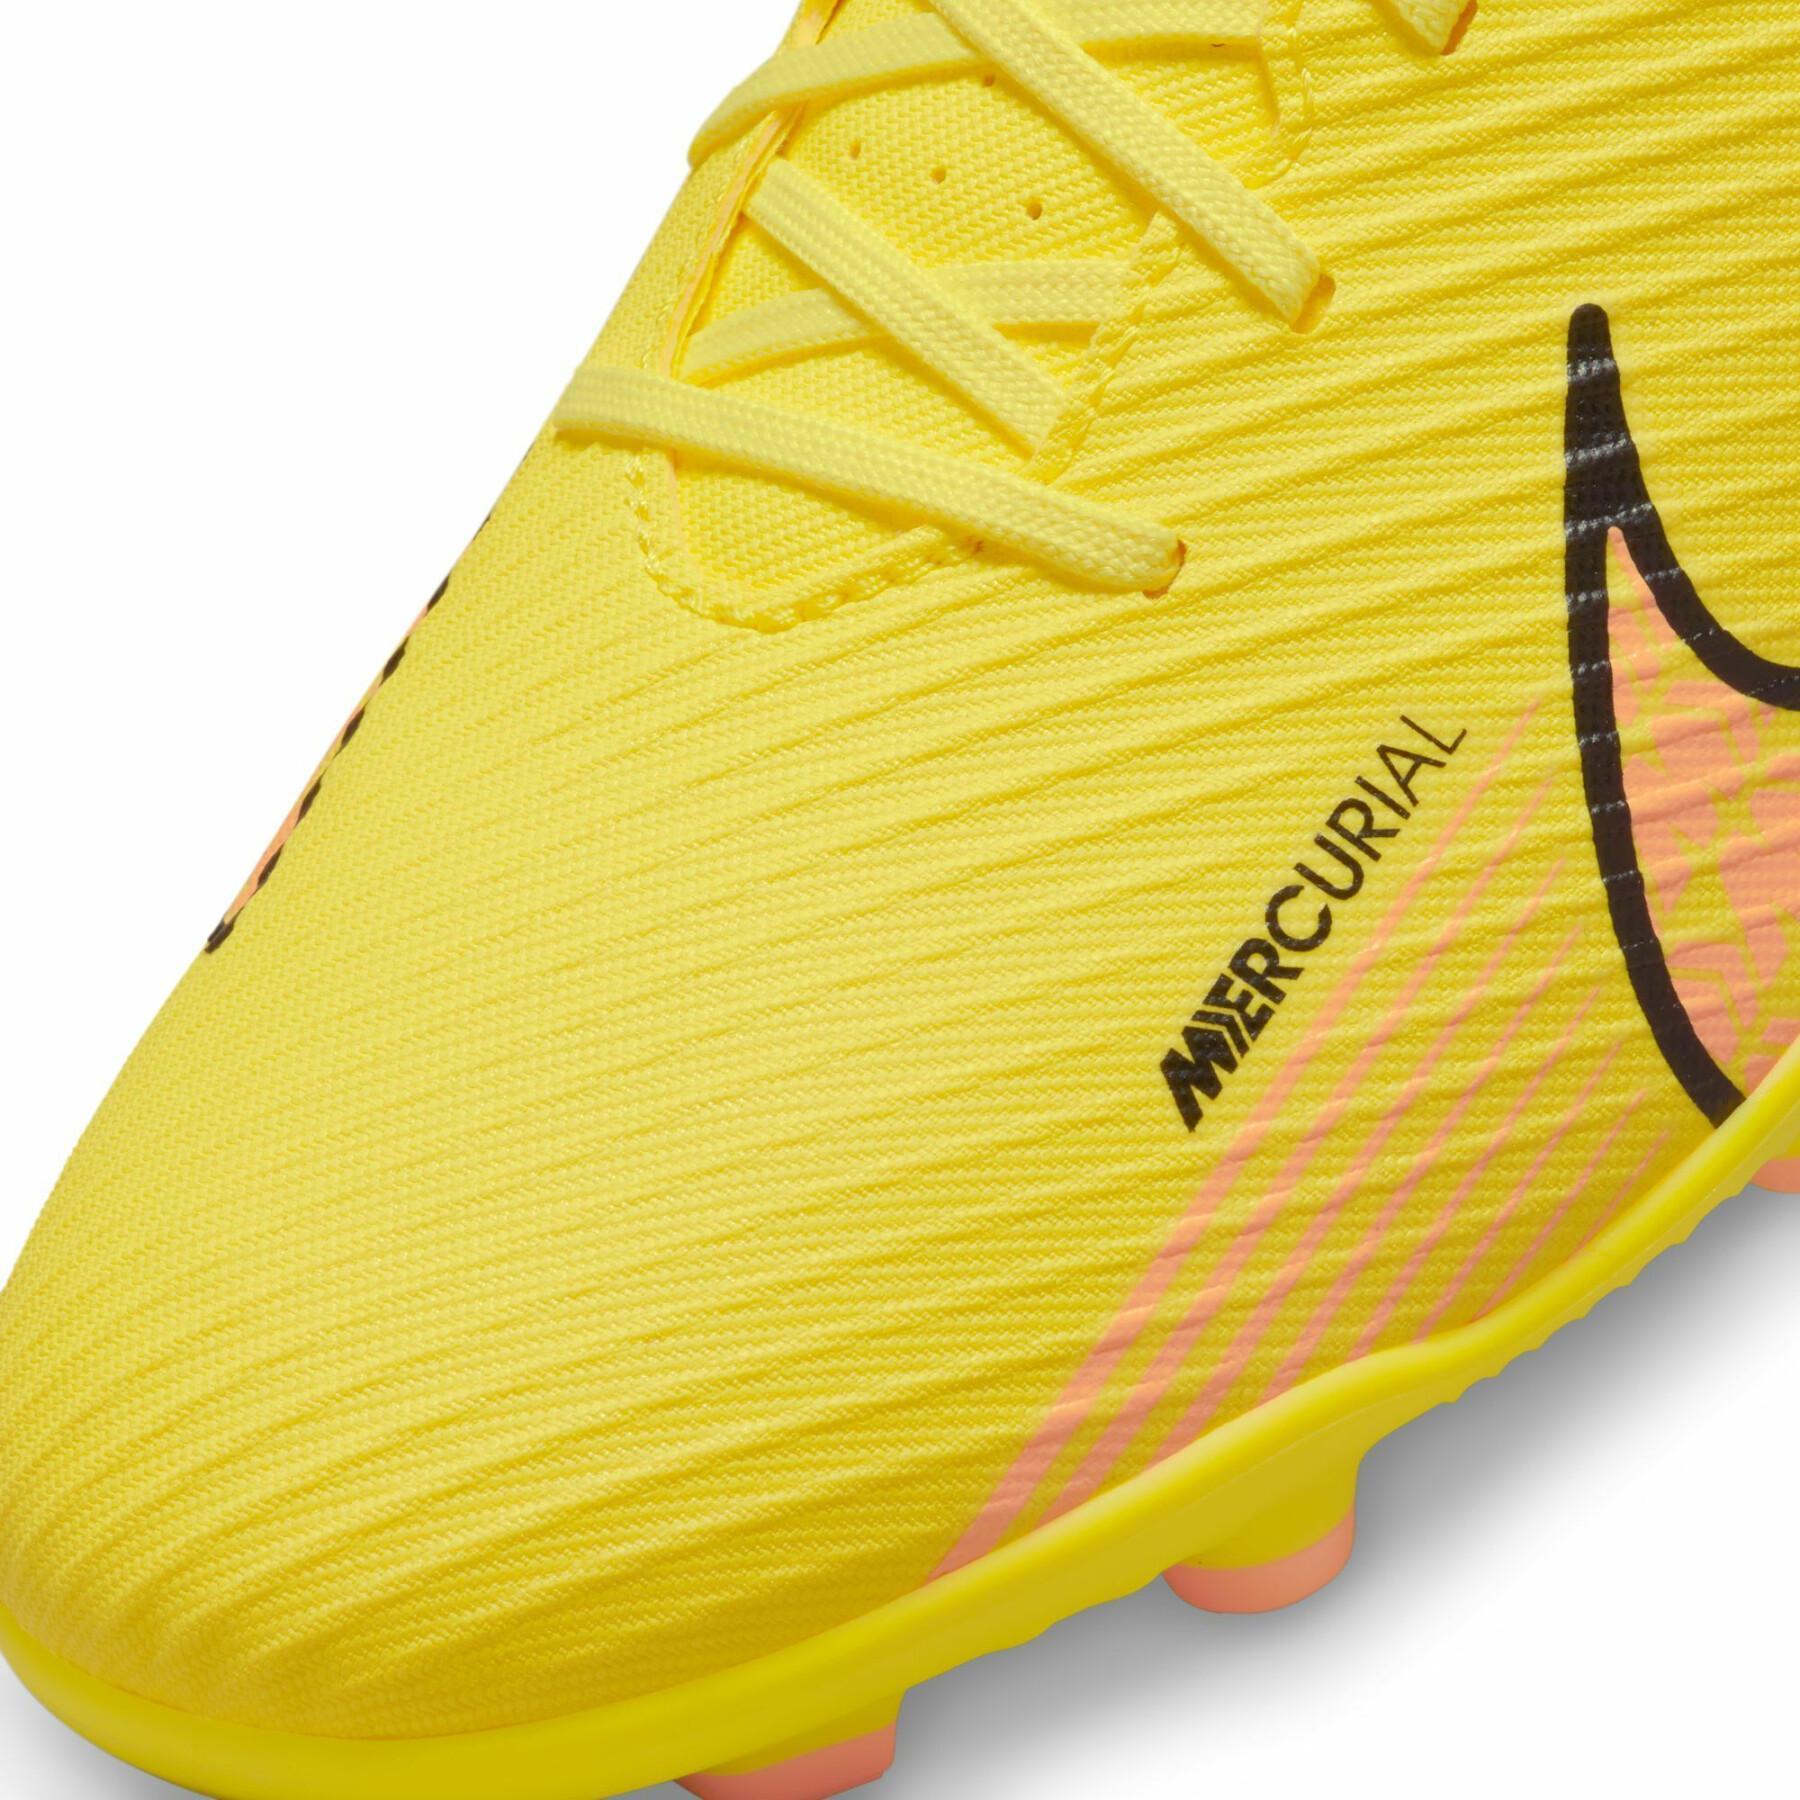 Botas de fútbol Nike Mercurial Vapor 15 Club MG - Lucent Pack